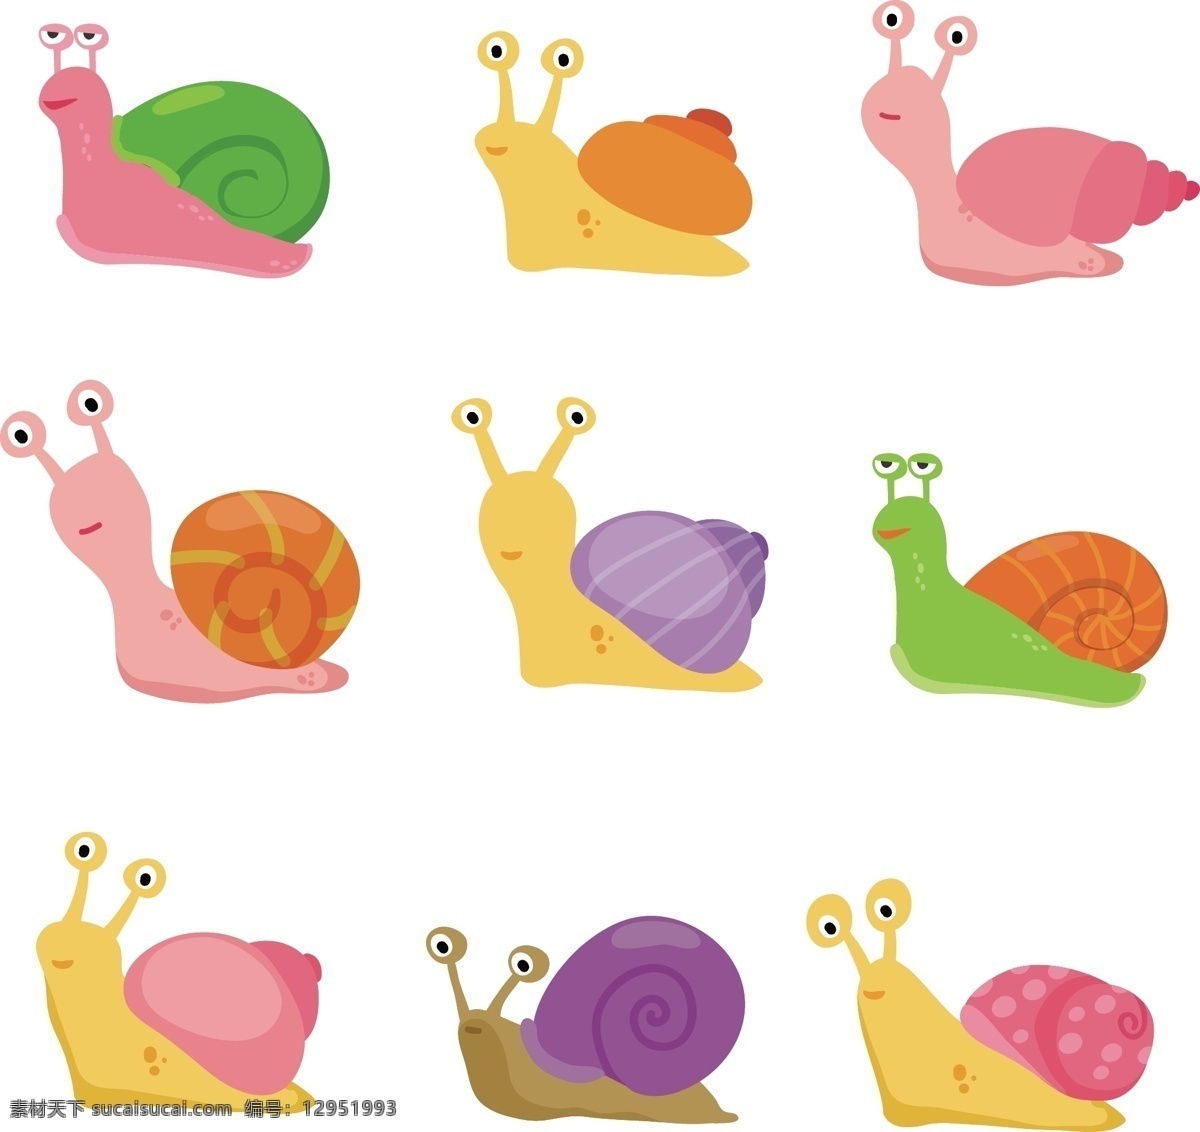 矢量卡通蜗牛 矢量图 蜗牛 卡通蜗牛 抽象蜗牛 抽象适量蜗牛 可爱蜗牛 背景 插图 卡通设计